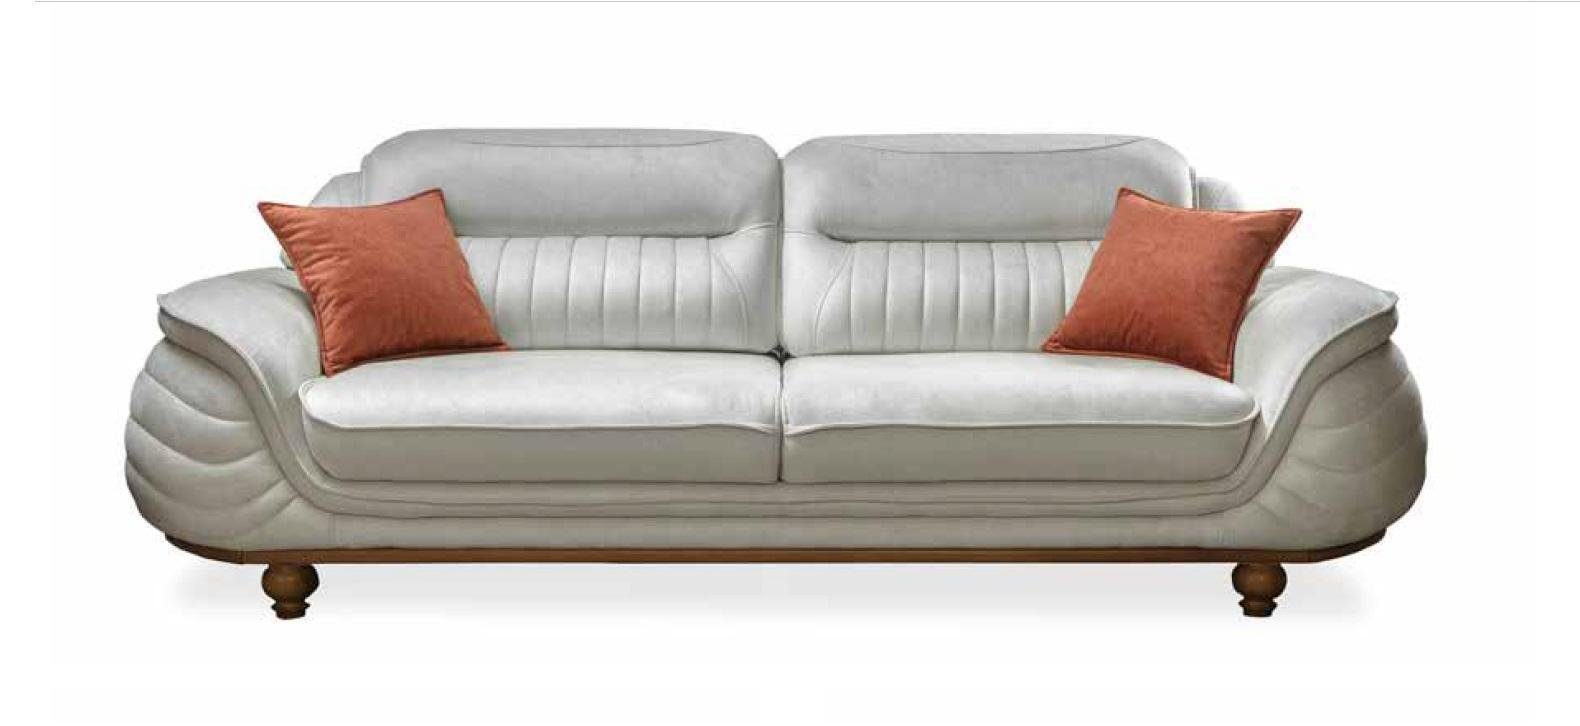 JVmoebel Sofa Sofas Zimmer Möbel Neu Design Dreisitzer Couch Polster Sofa 3 Sitz, Made in Europe | Alle Sofas